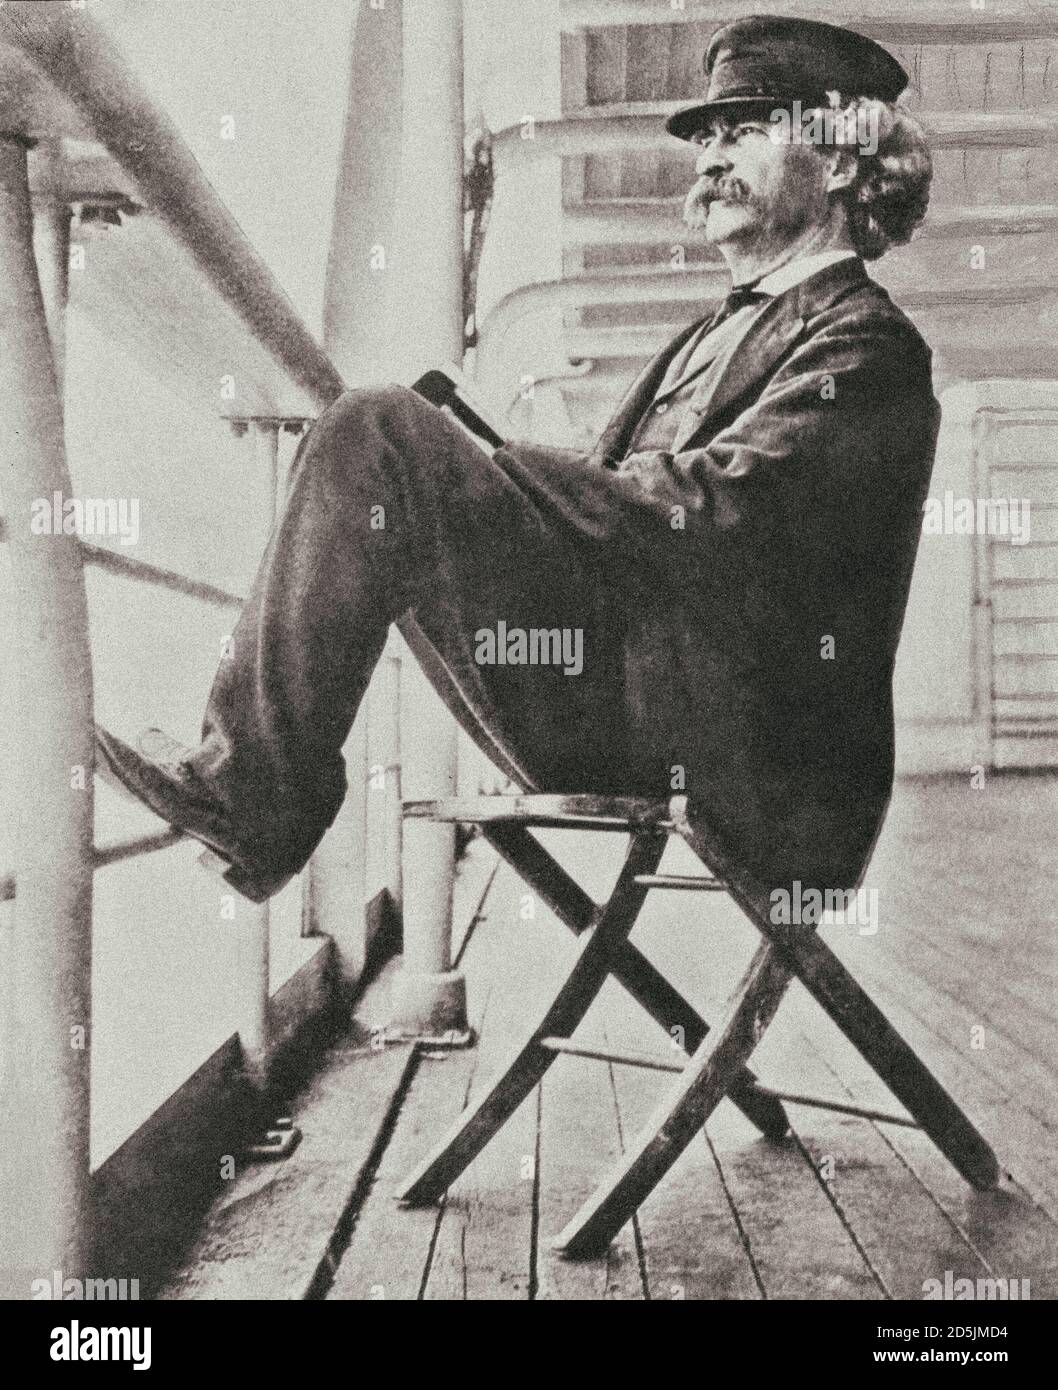 Portrait-crayon de Mark Twayn Samuel Langhorne Clemens (1835 – 1910), connu sous son nom de plume Mark Twain, était un écrivain, humoriste, entrepreneur américain Banque D'Images